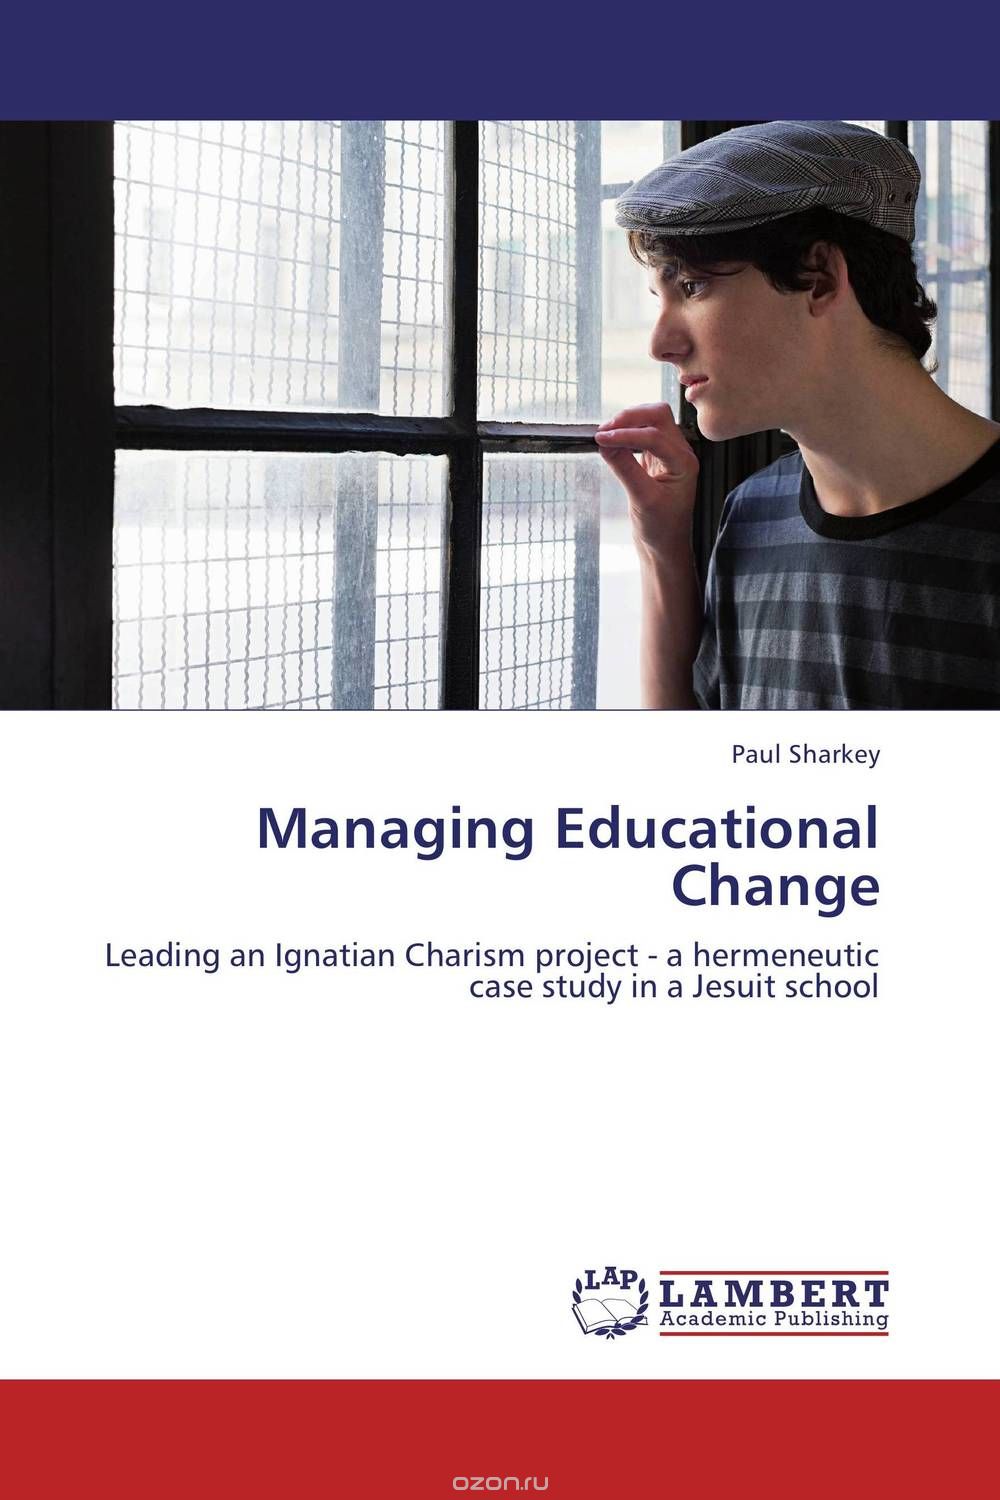 Скачать книгу "Managing Educational Change"